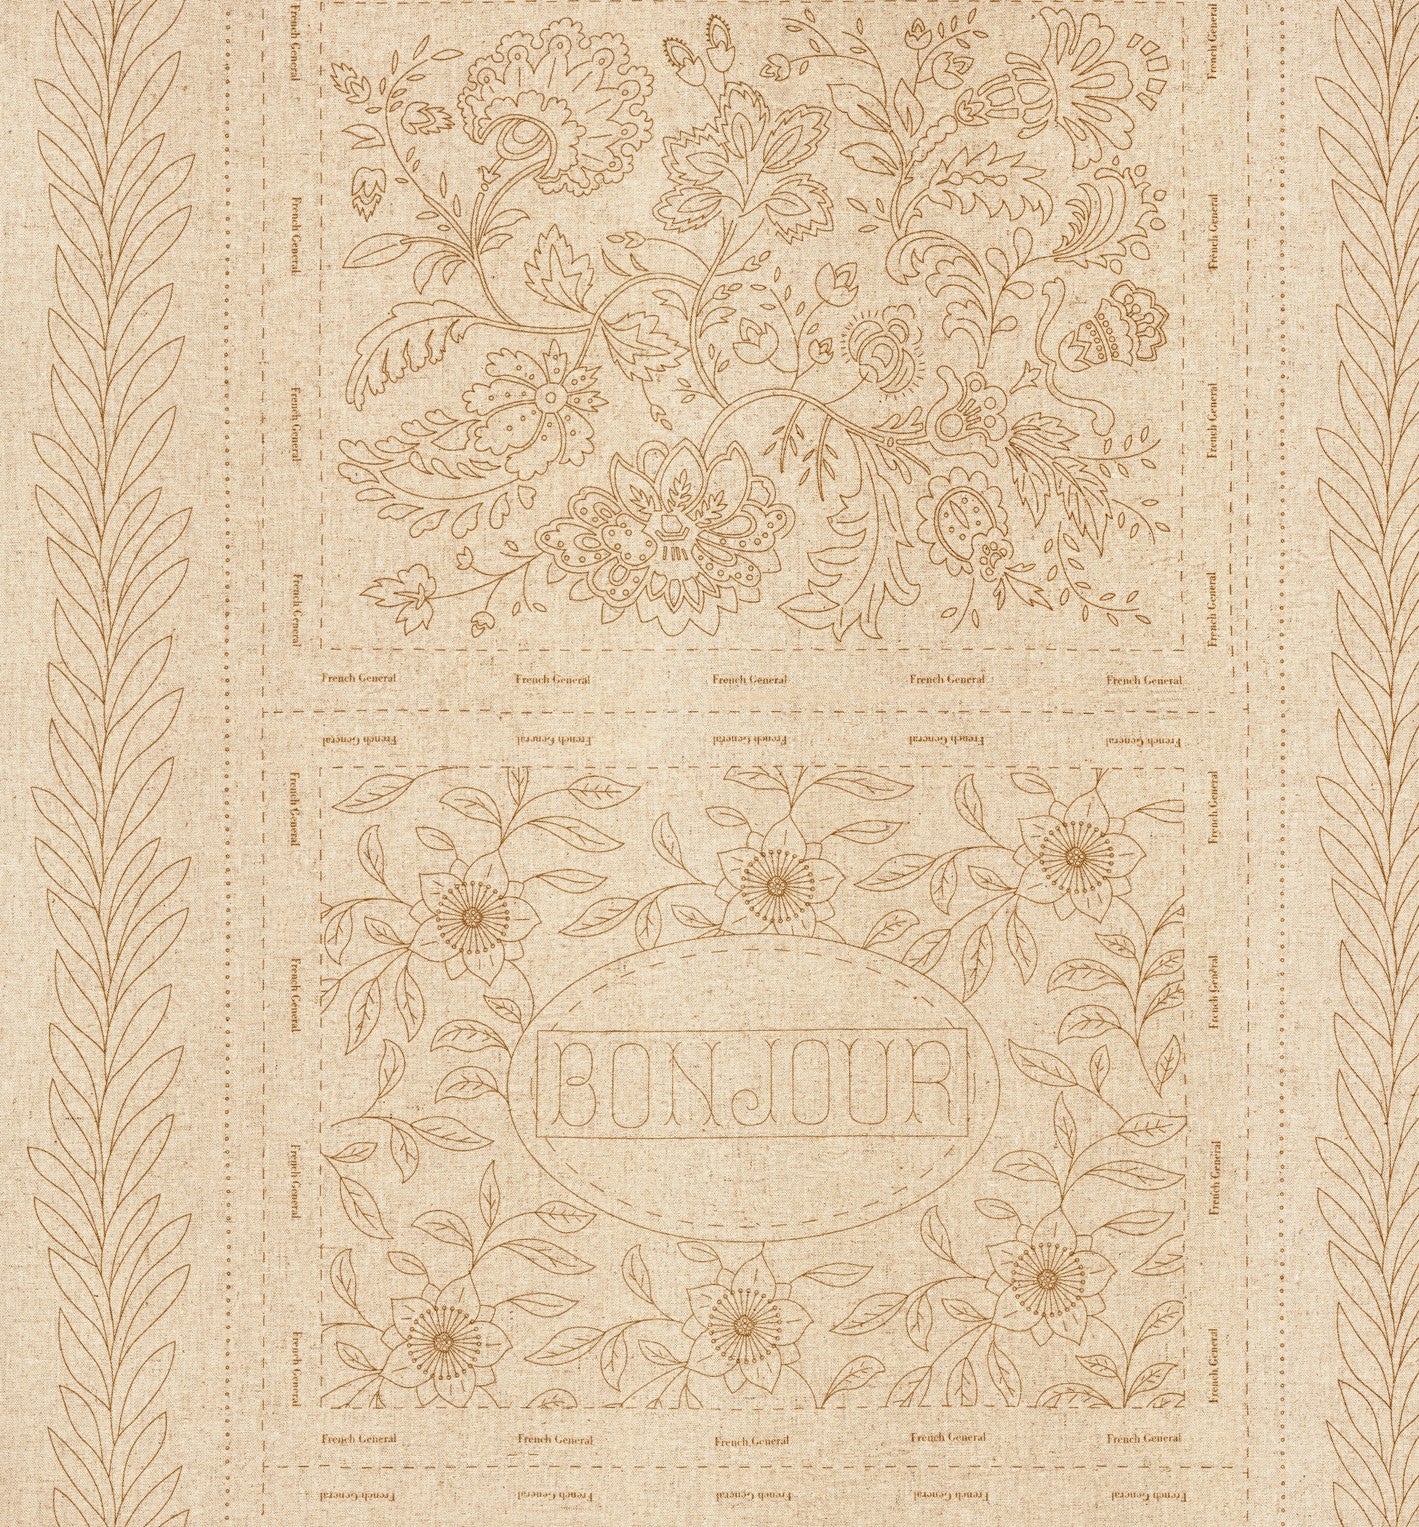 QB- Bonheur De Jour (Includes Linen Panel Pieces)